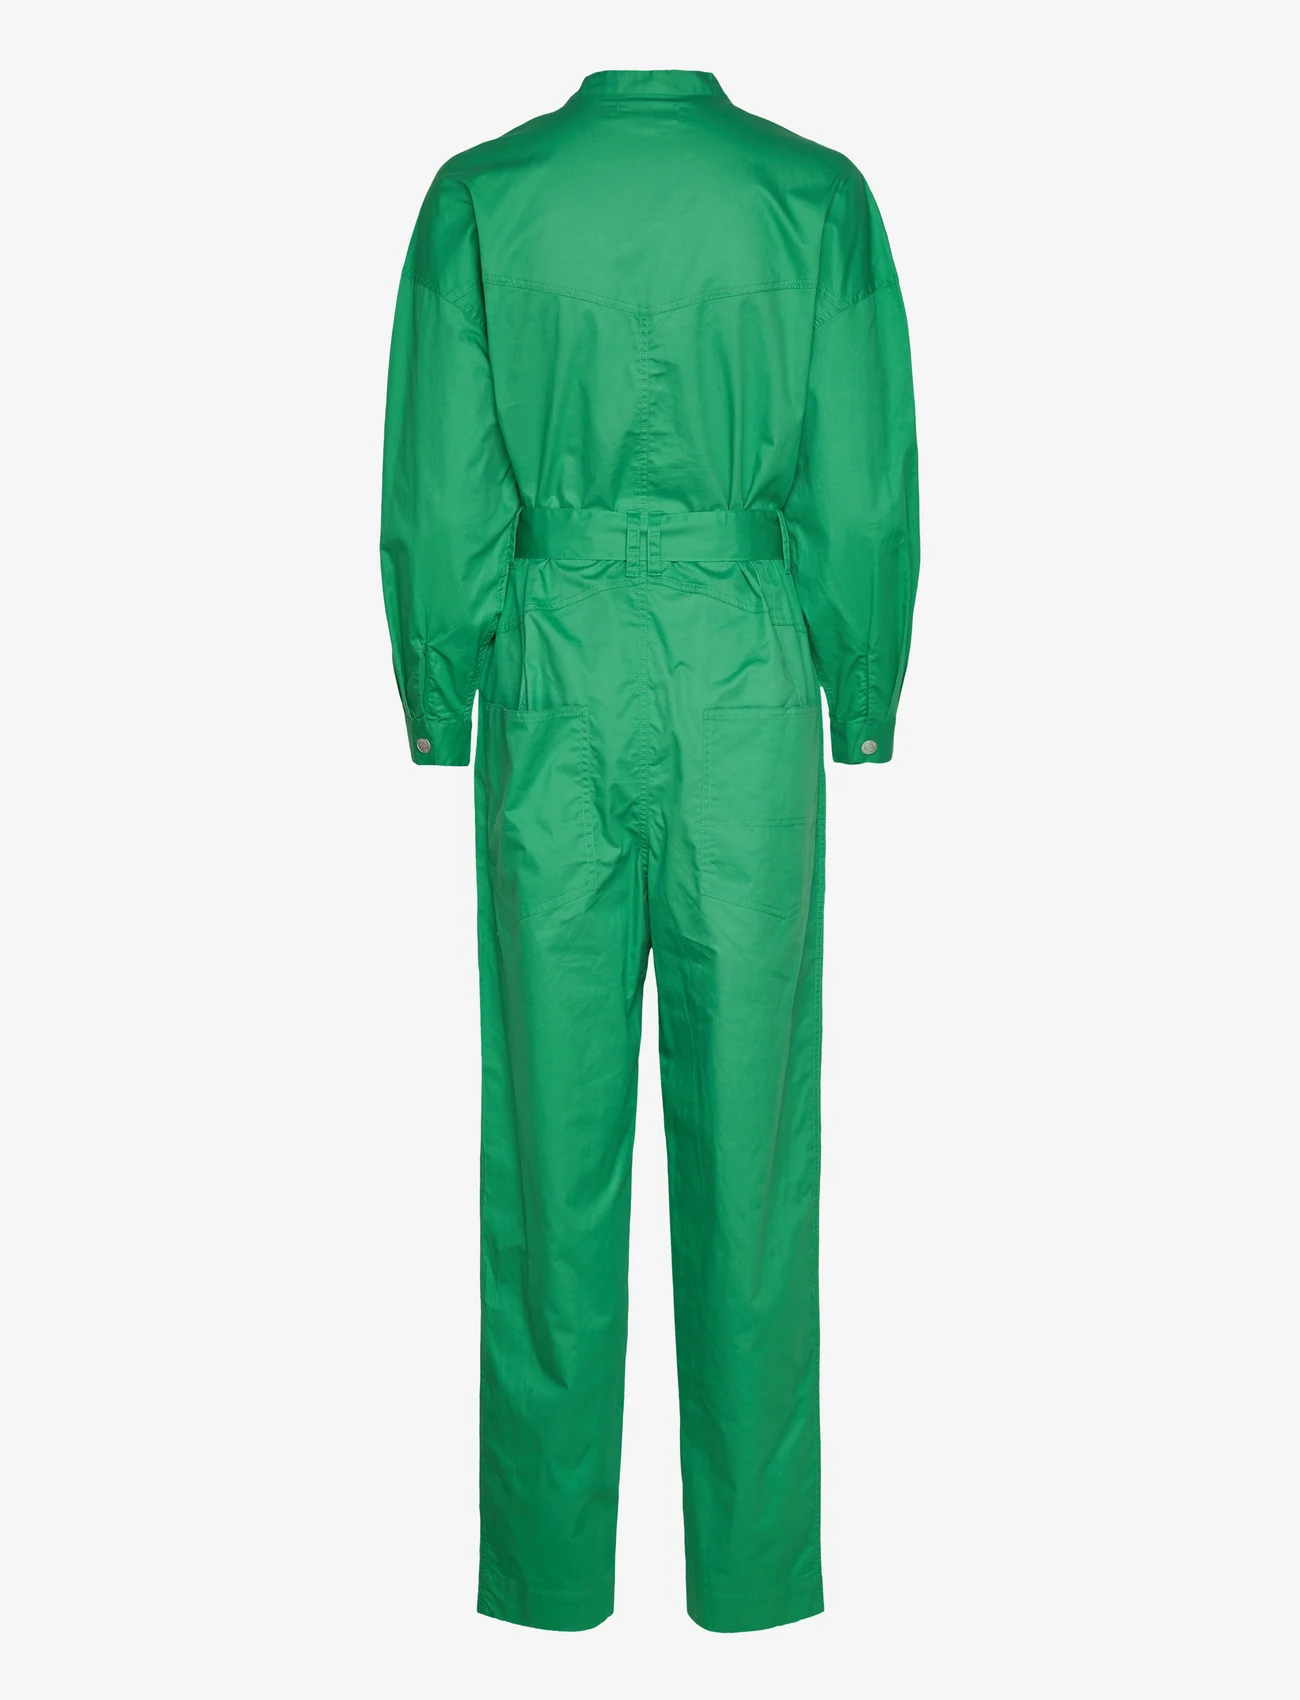 Lollys Laundry - Yuko Jumpsuit - women - 40 green - 1